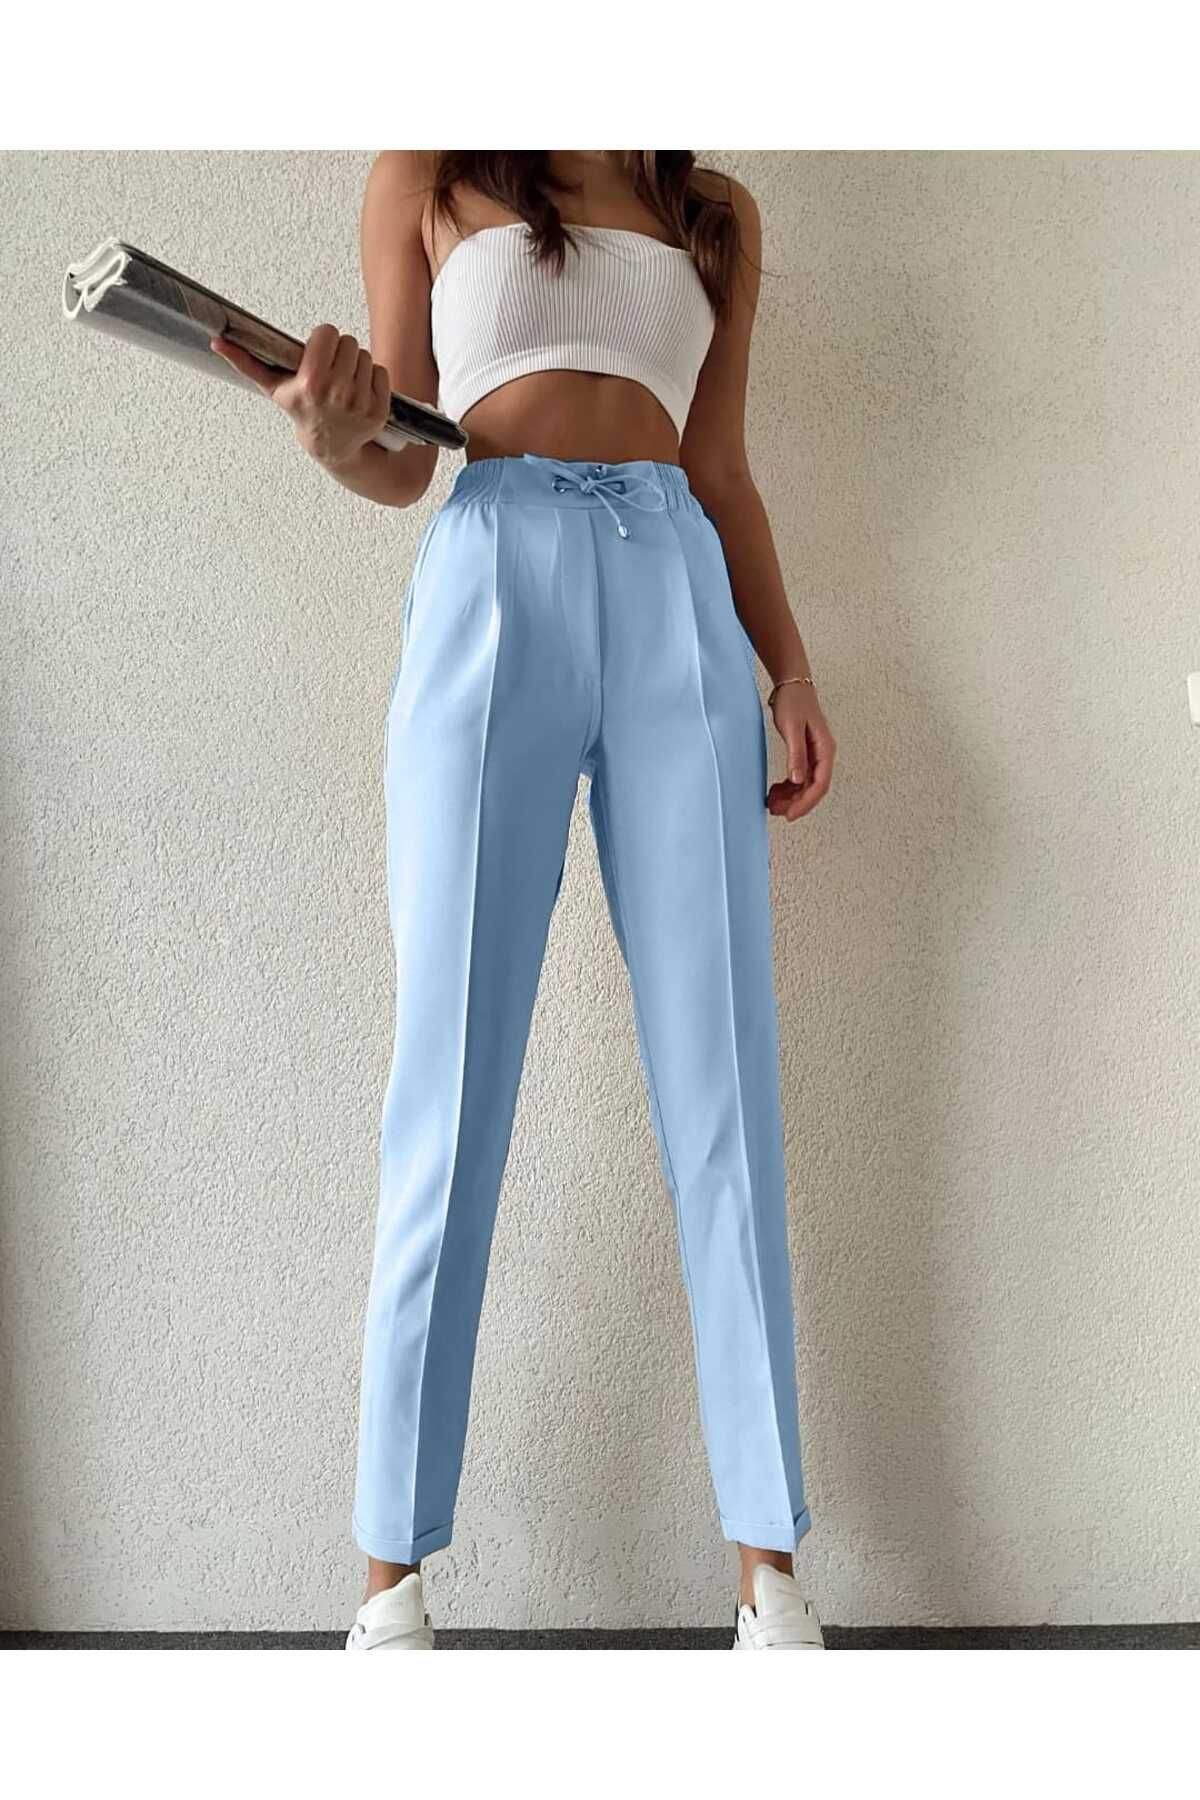 H&A İSTANBUL Kadın Beli Lastikli Cepli Havuç Pantolon